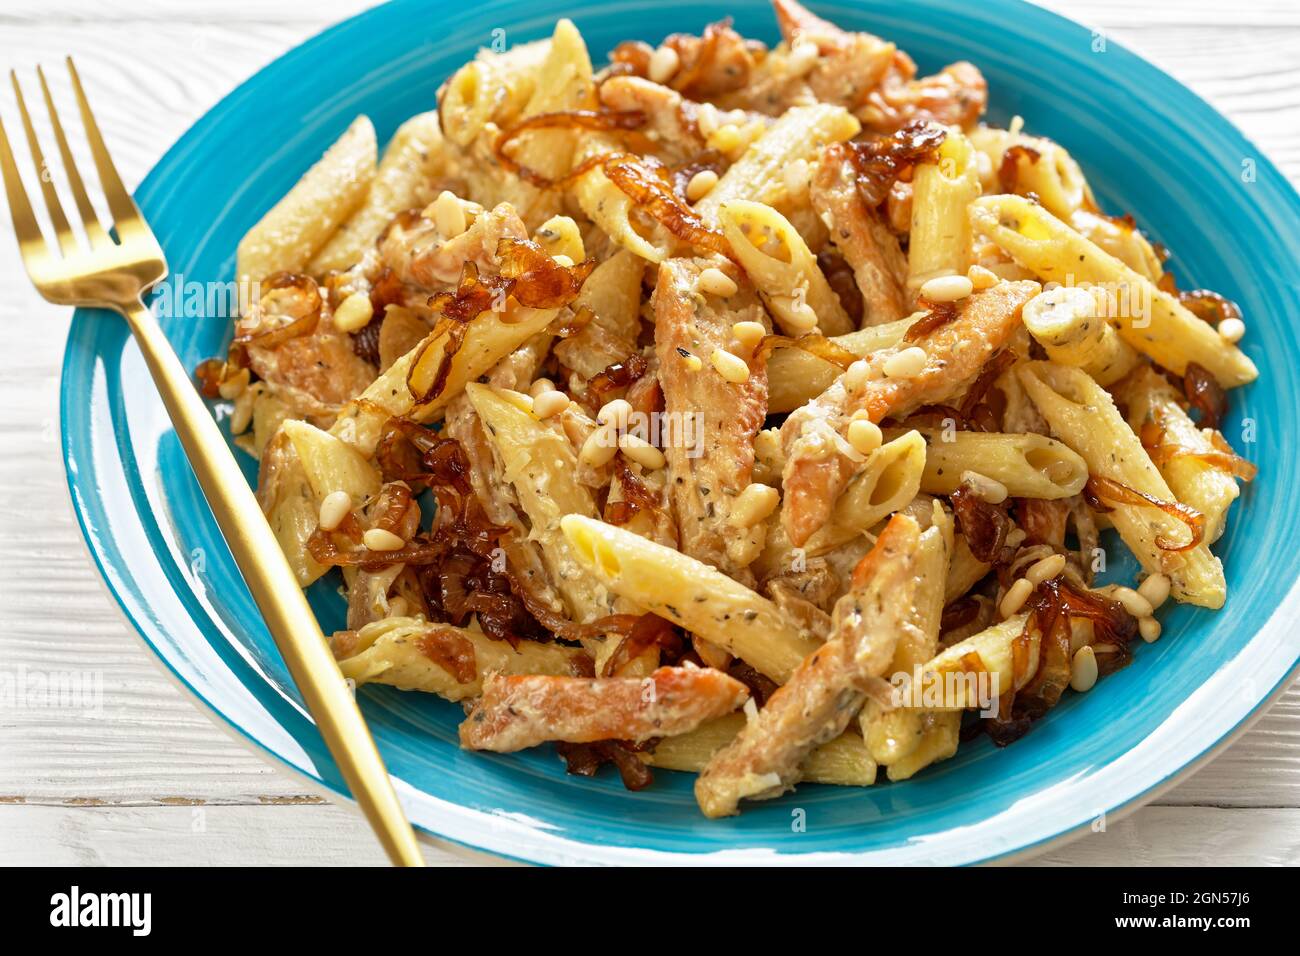 poulet alfredo pâtes penne avec oignon caramélisé arrosé de pignons de pin et parmesan râpé sur une assiette bleue sur une table en bois blanc, gros plan Banque D'Images